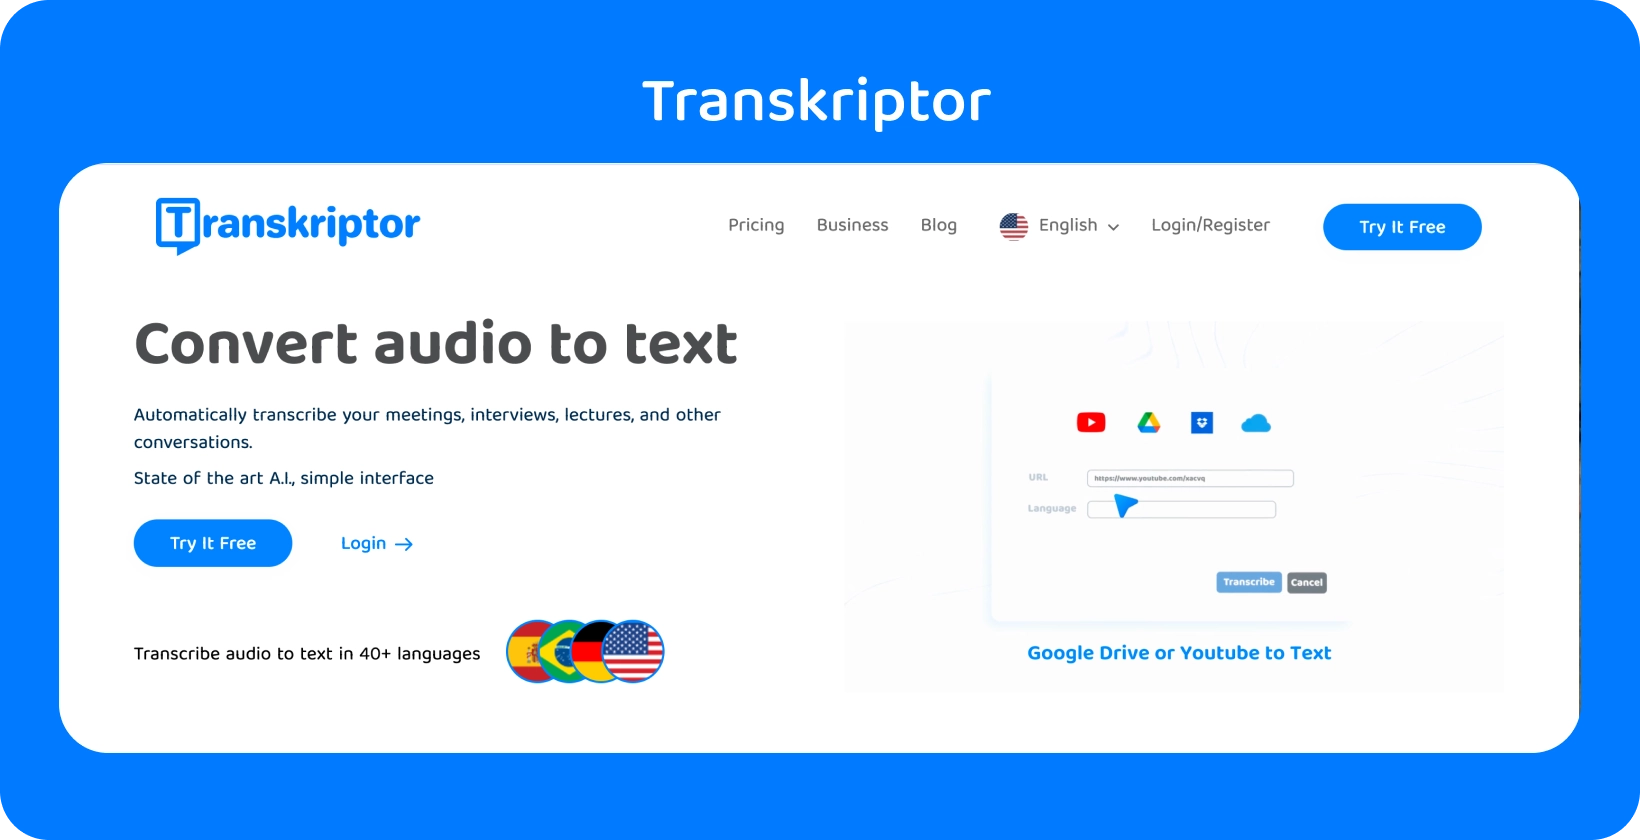 Transkriptor verkkosivulla, jossa mainitaan Muunna ääni tekstiksi -ominaisuus, joka on valmis helppoa transkriptiota varten.